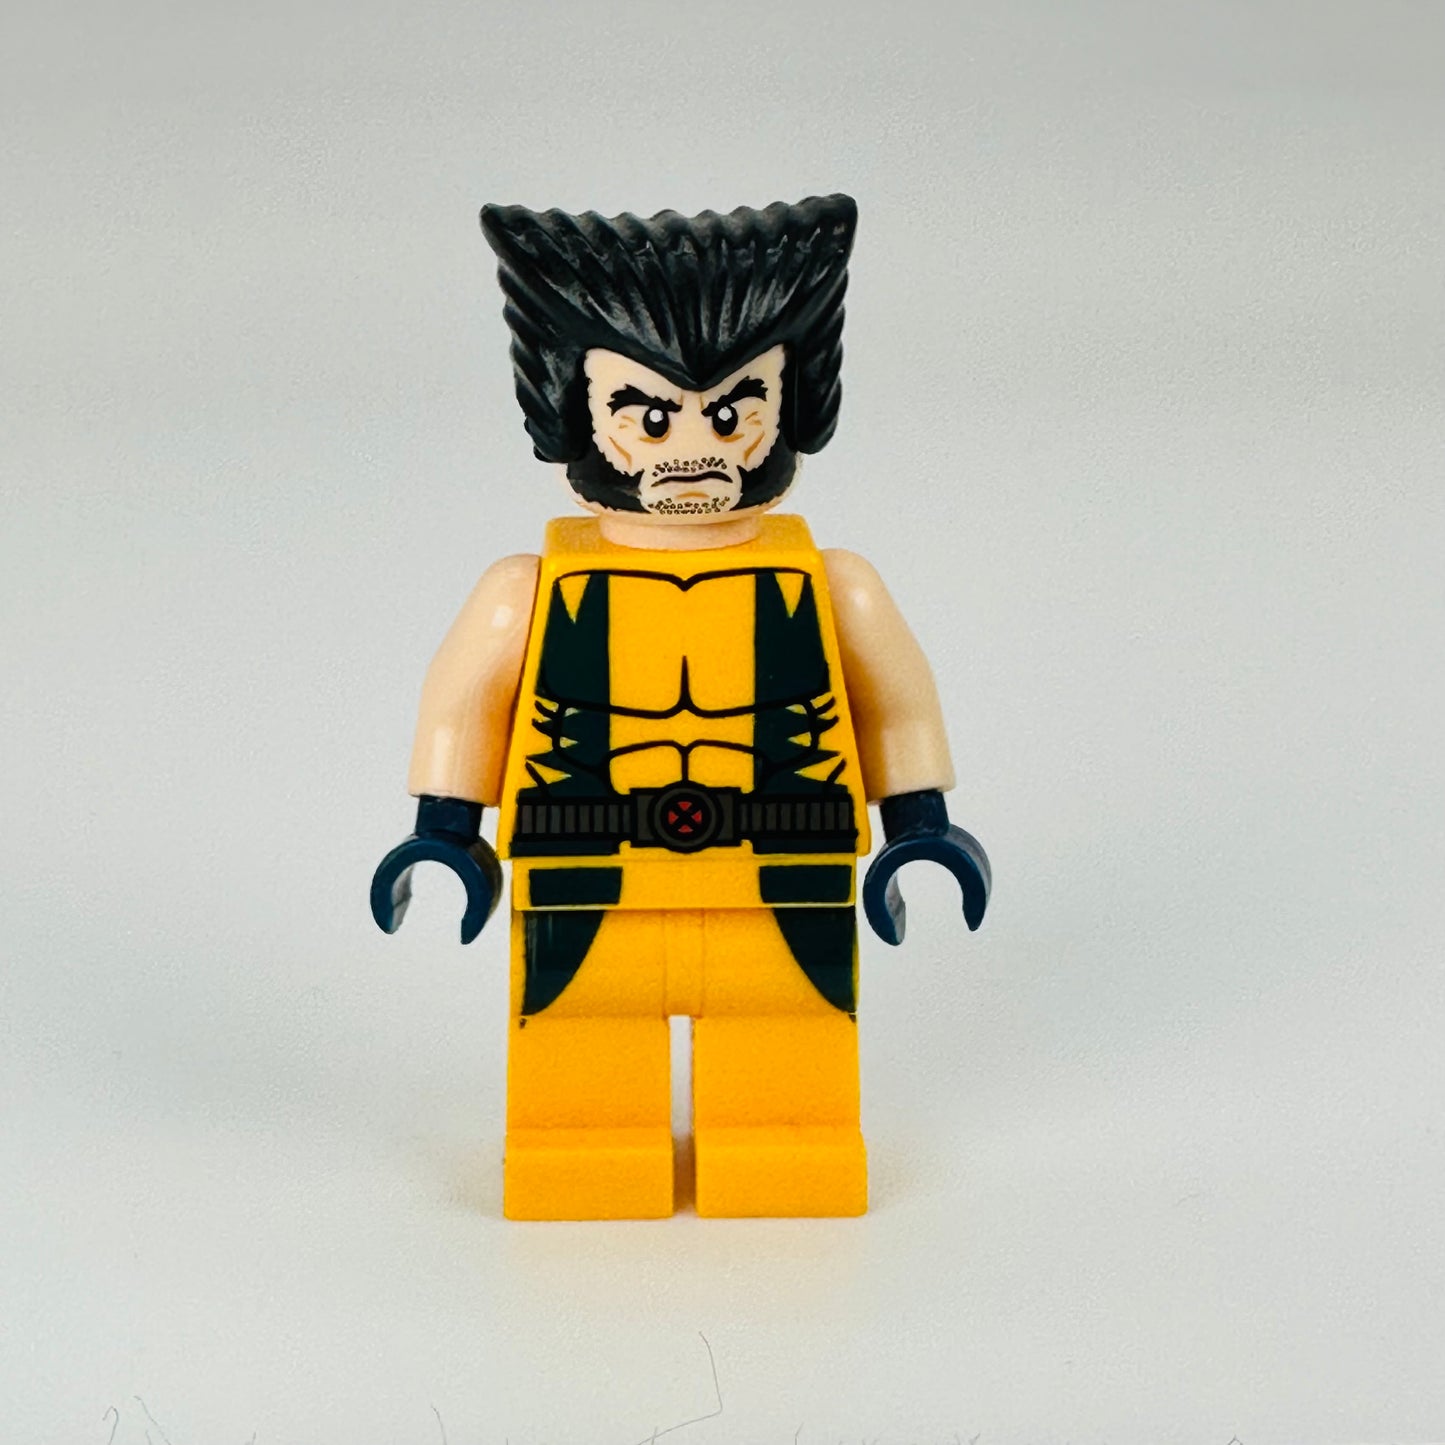 sh017: Wolverine